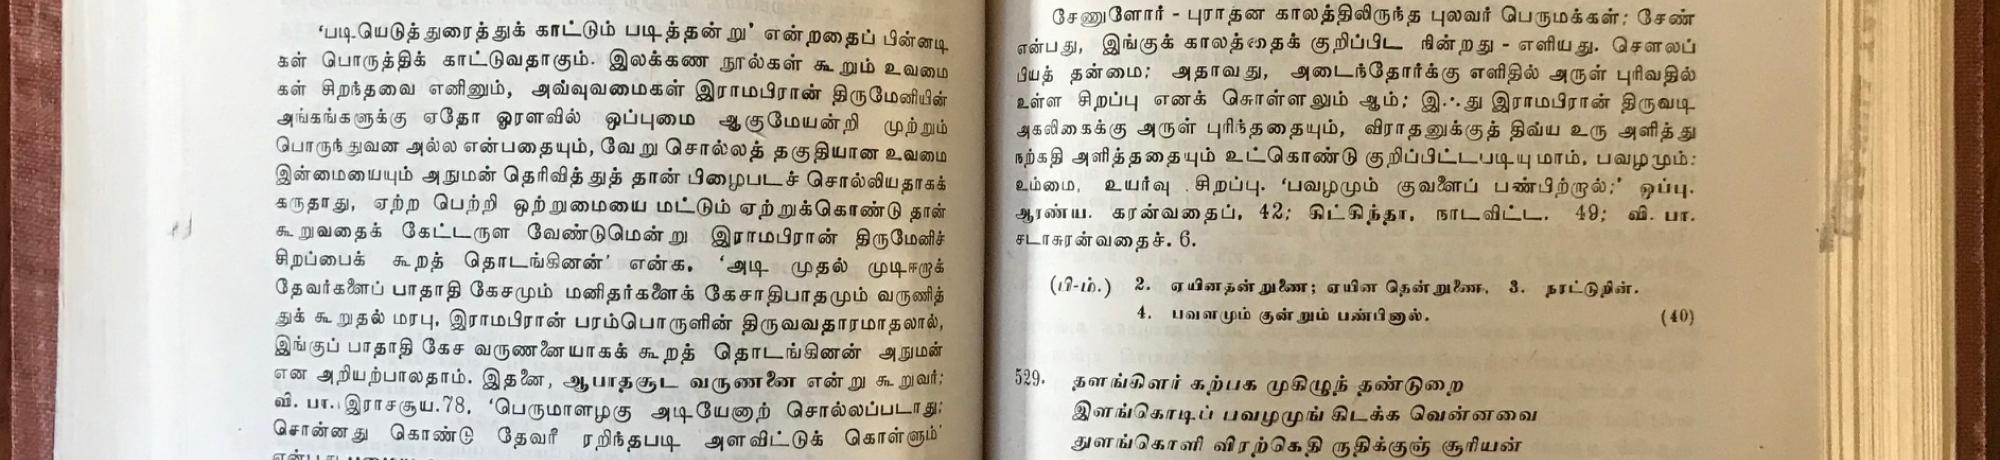 UVS Tamil Edition